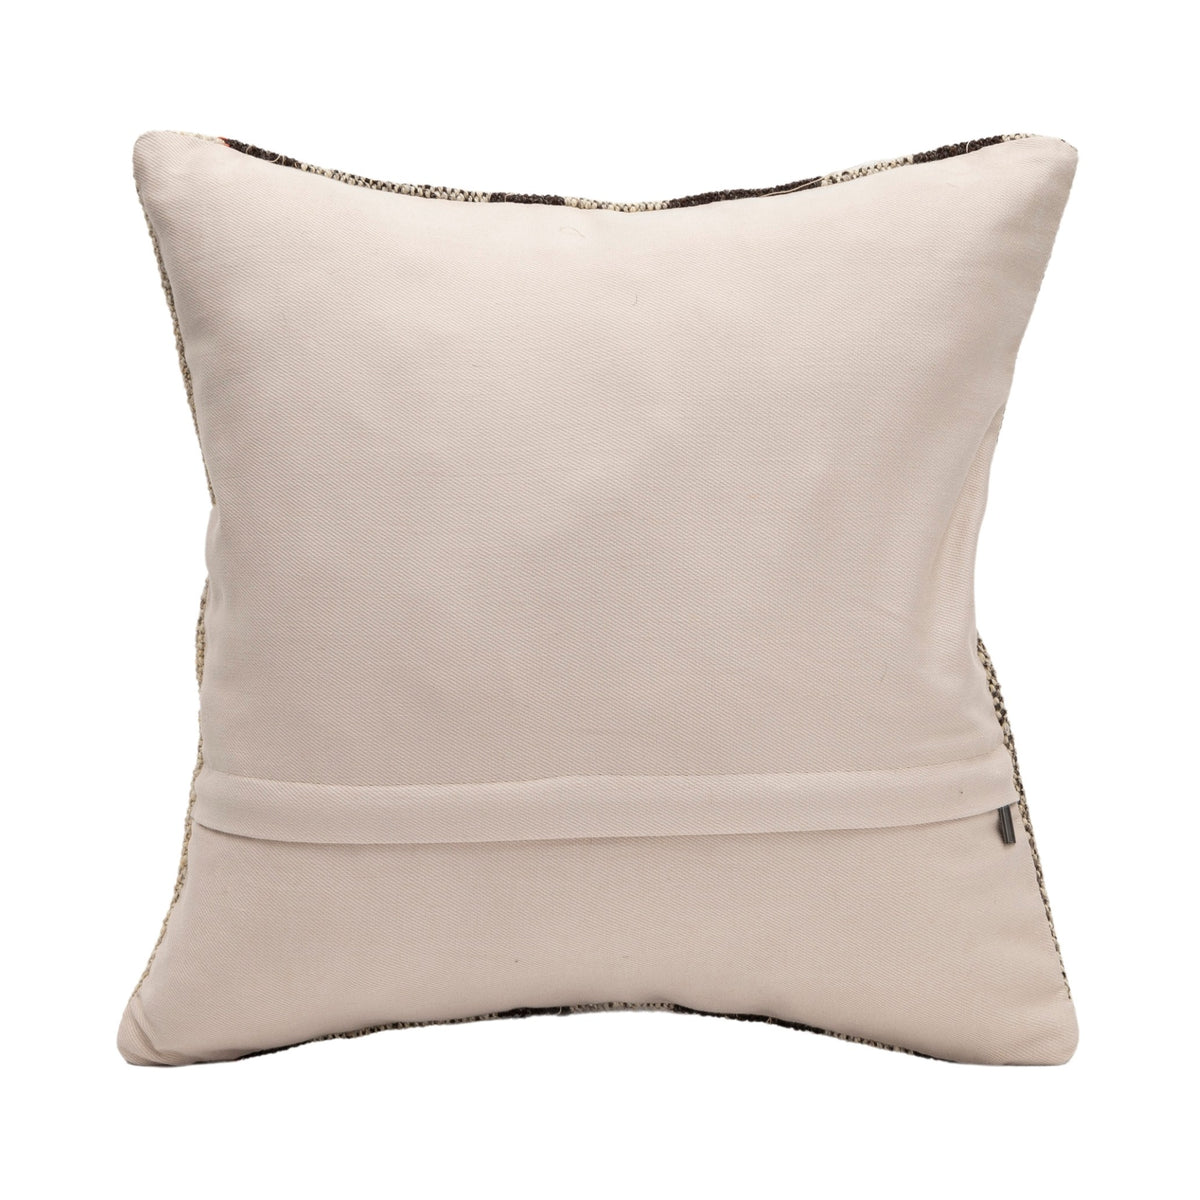 Handwoven Kilim Pillow Cushion Cover 16" x 16"